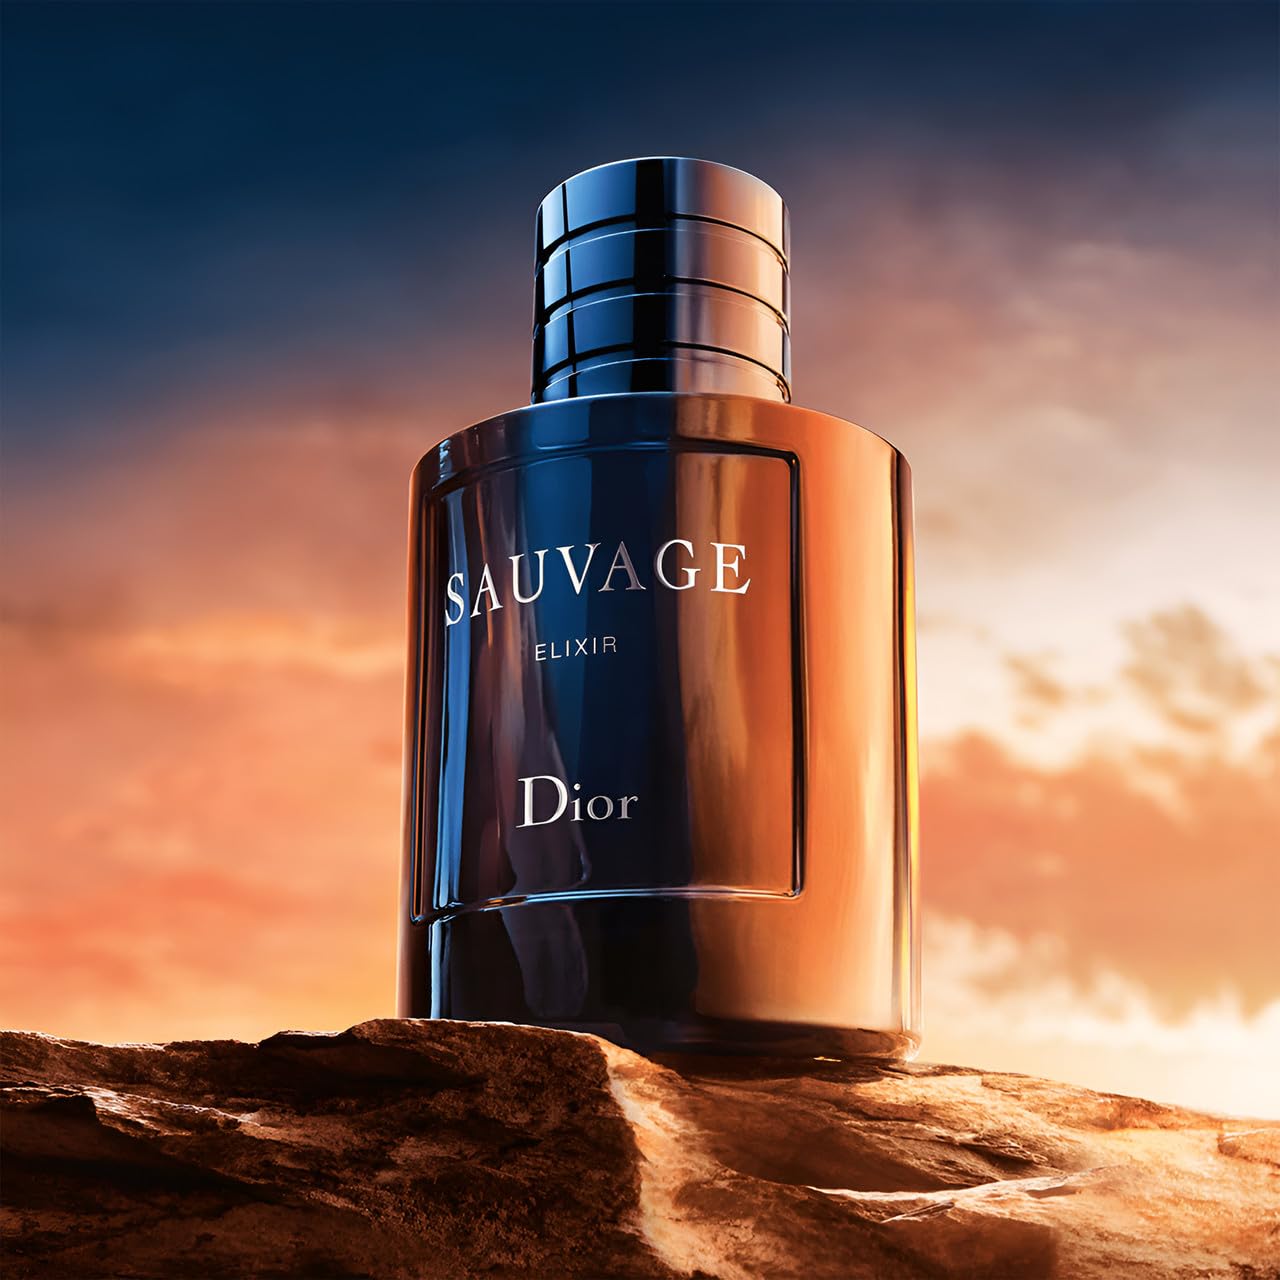 Christian Dior Sauvage Elixir 60 ml Eau De Cologne Spray for Men